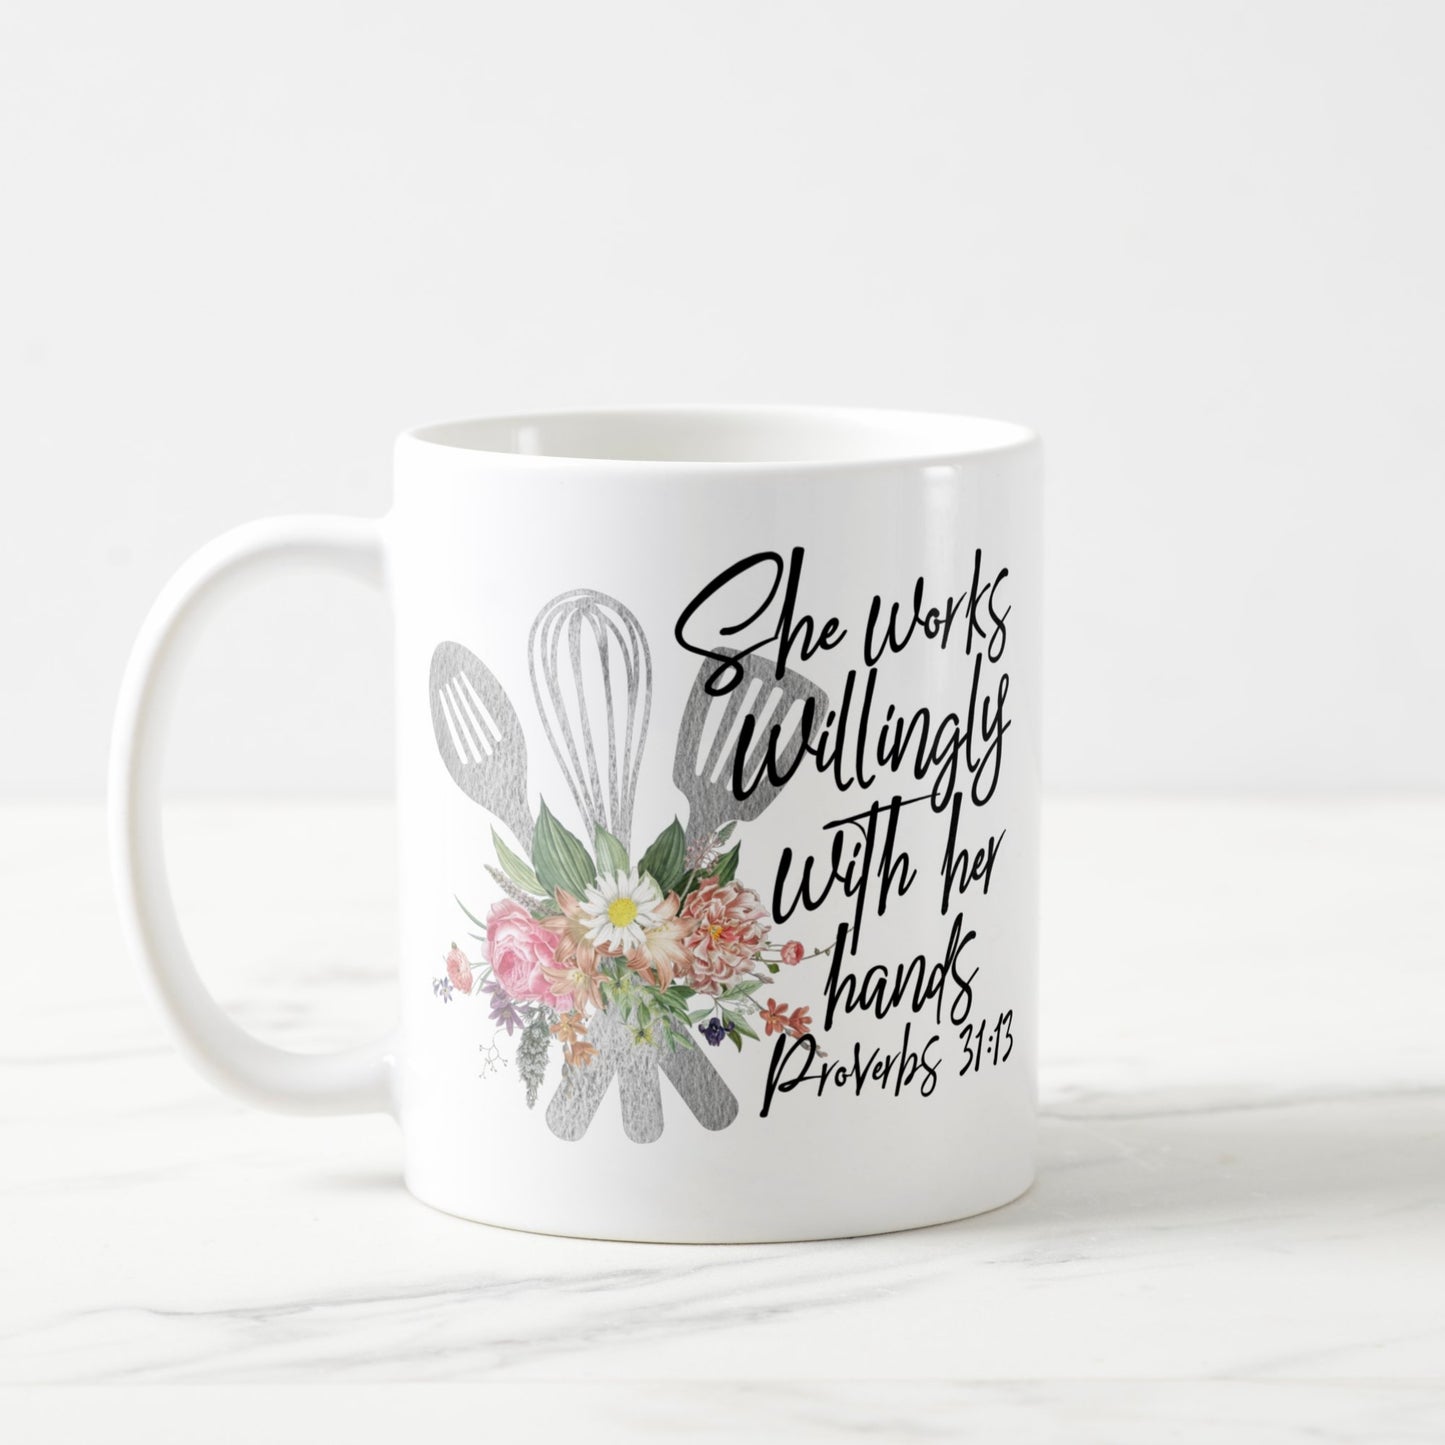 Proverbs 31:13 mugs